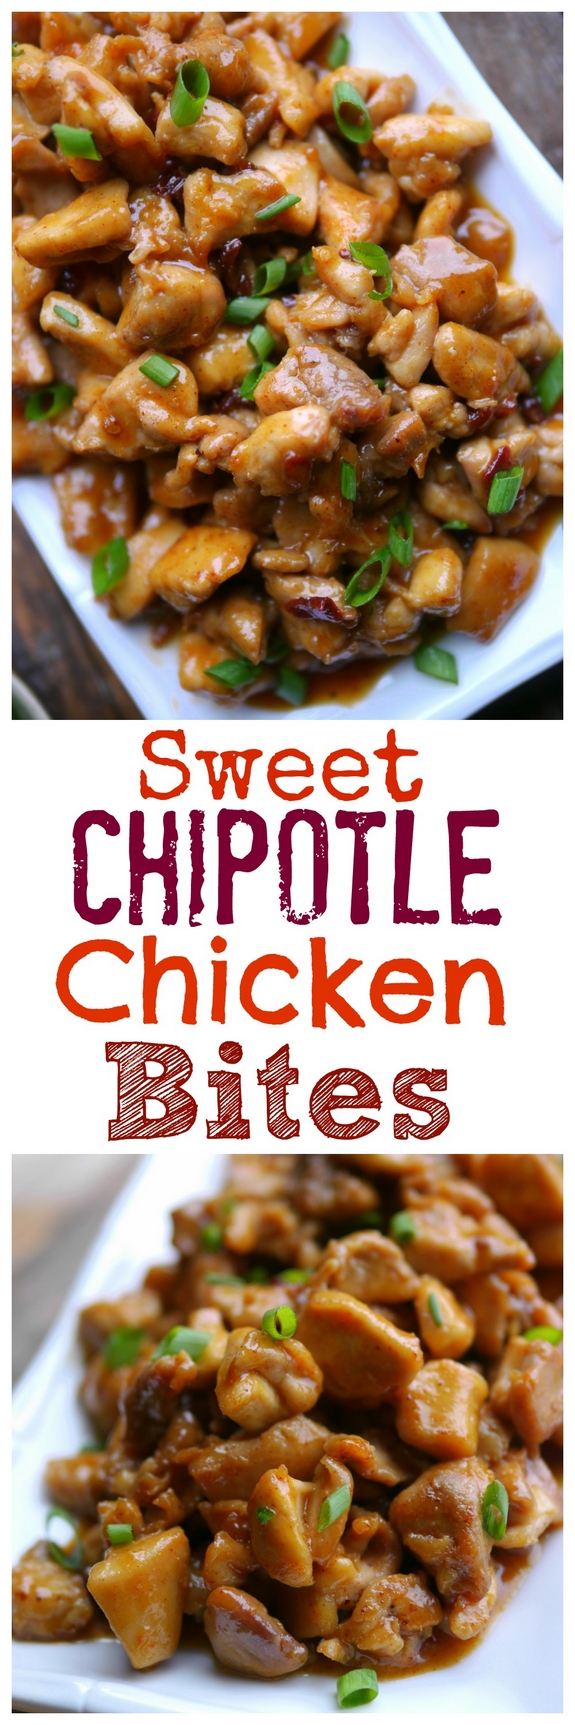 Sweet Chipotle Chicken Bites